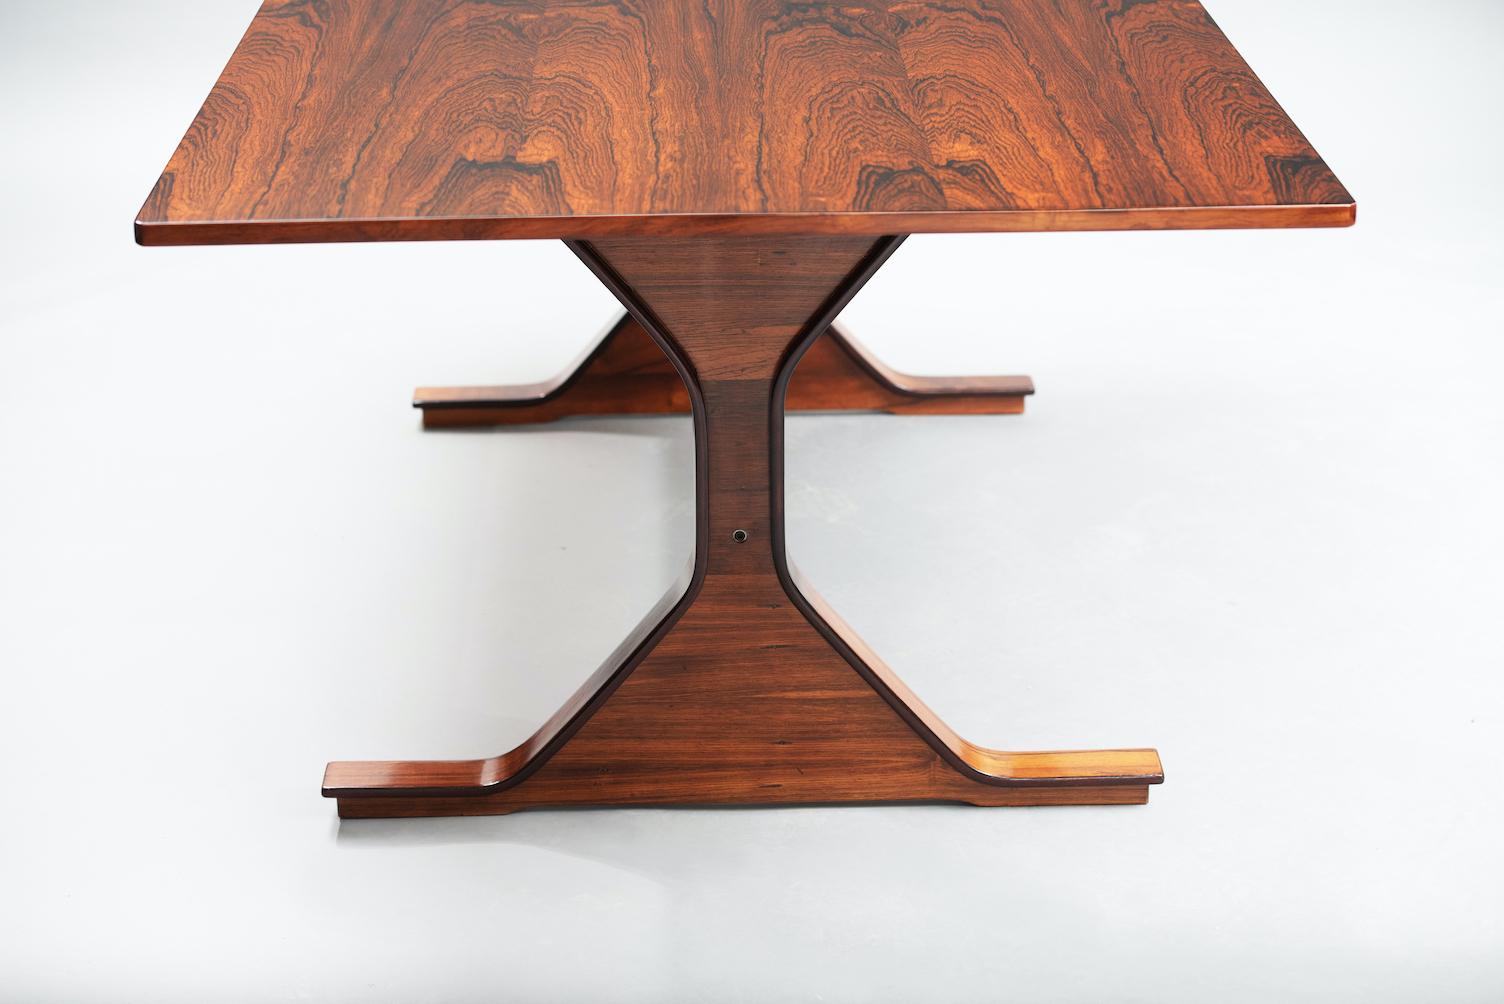 Rechteckiger Esstisch Modell 522 in Palo Santo, entworfen von Gianfranco Frattini für Bernini.
Ein zeitloser Tisch mit einem ikonischen Design, perfekt verarbeitet in einem sehr edlen Holz.

